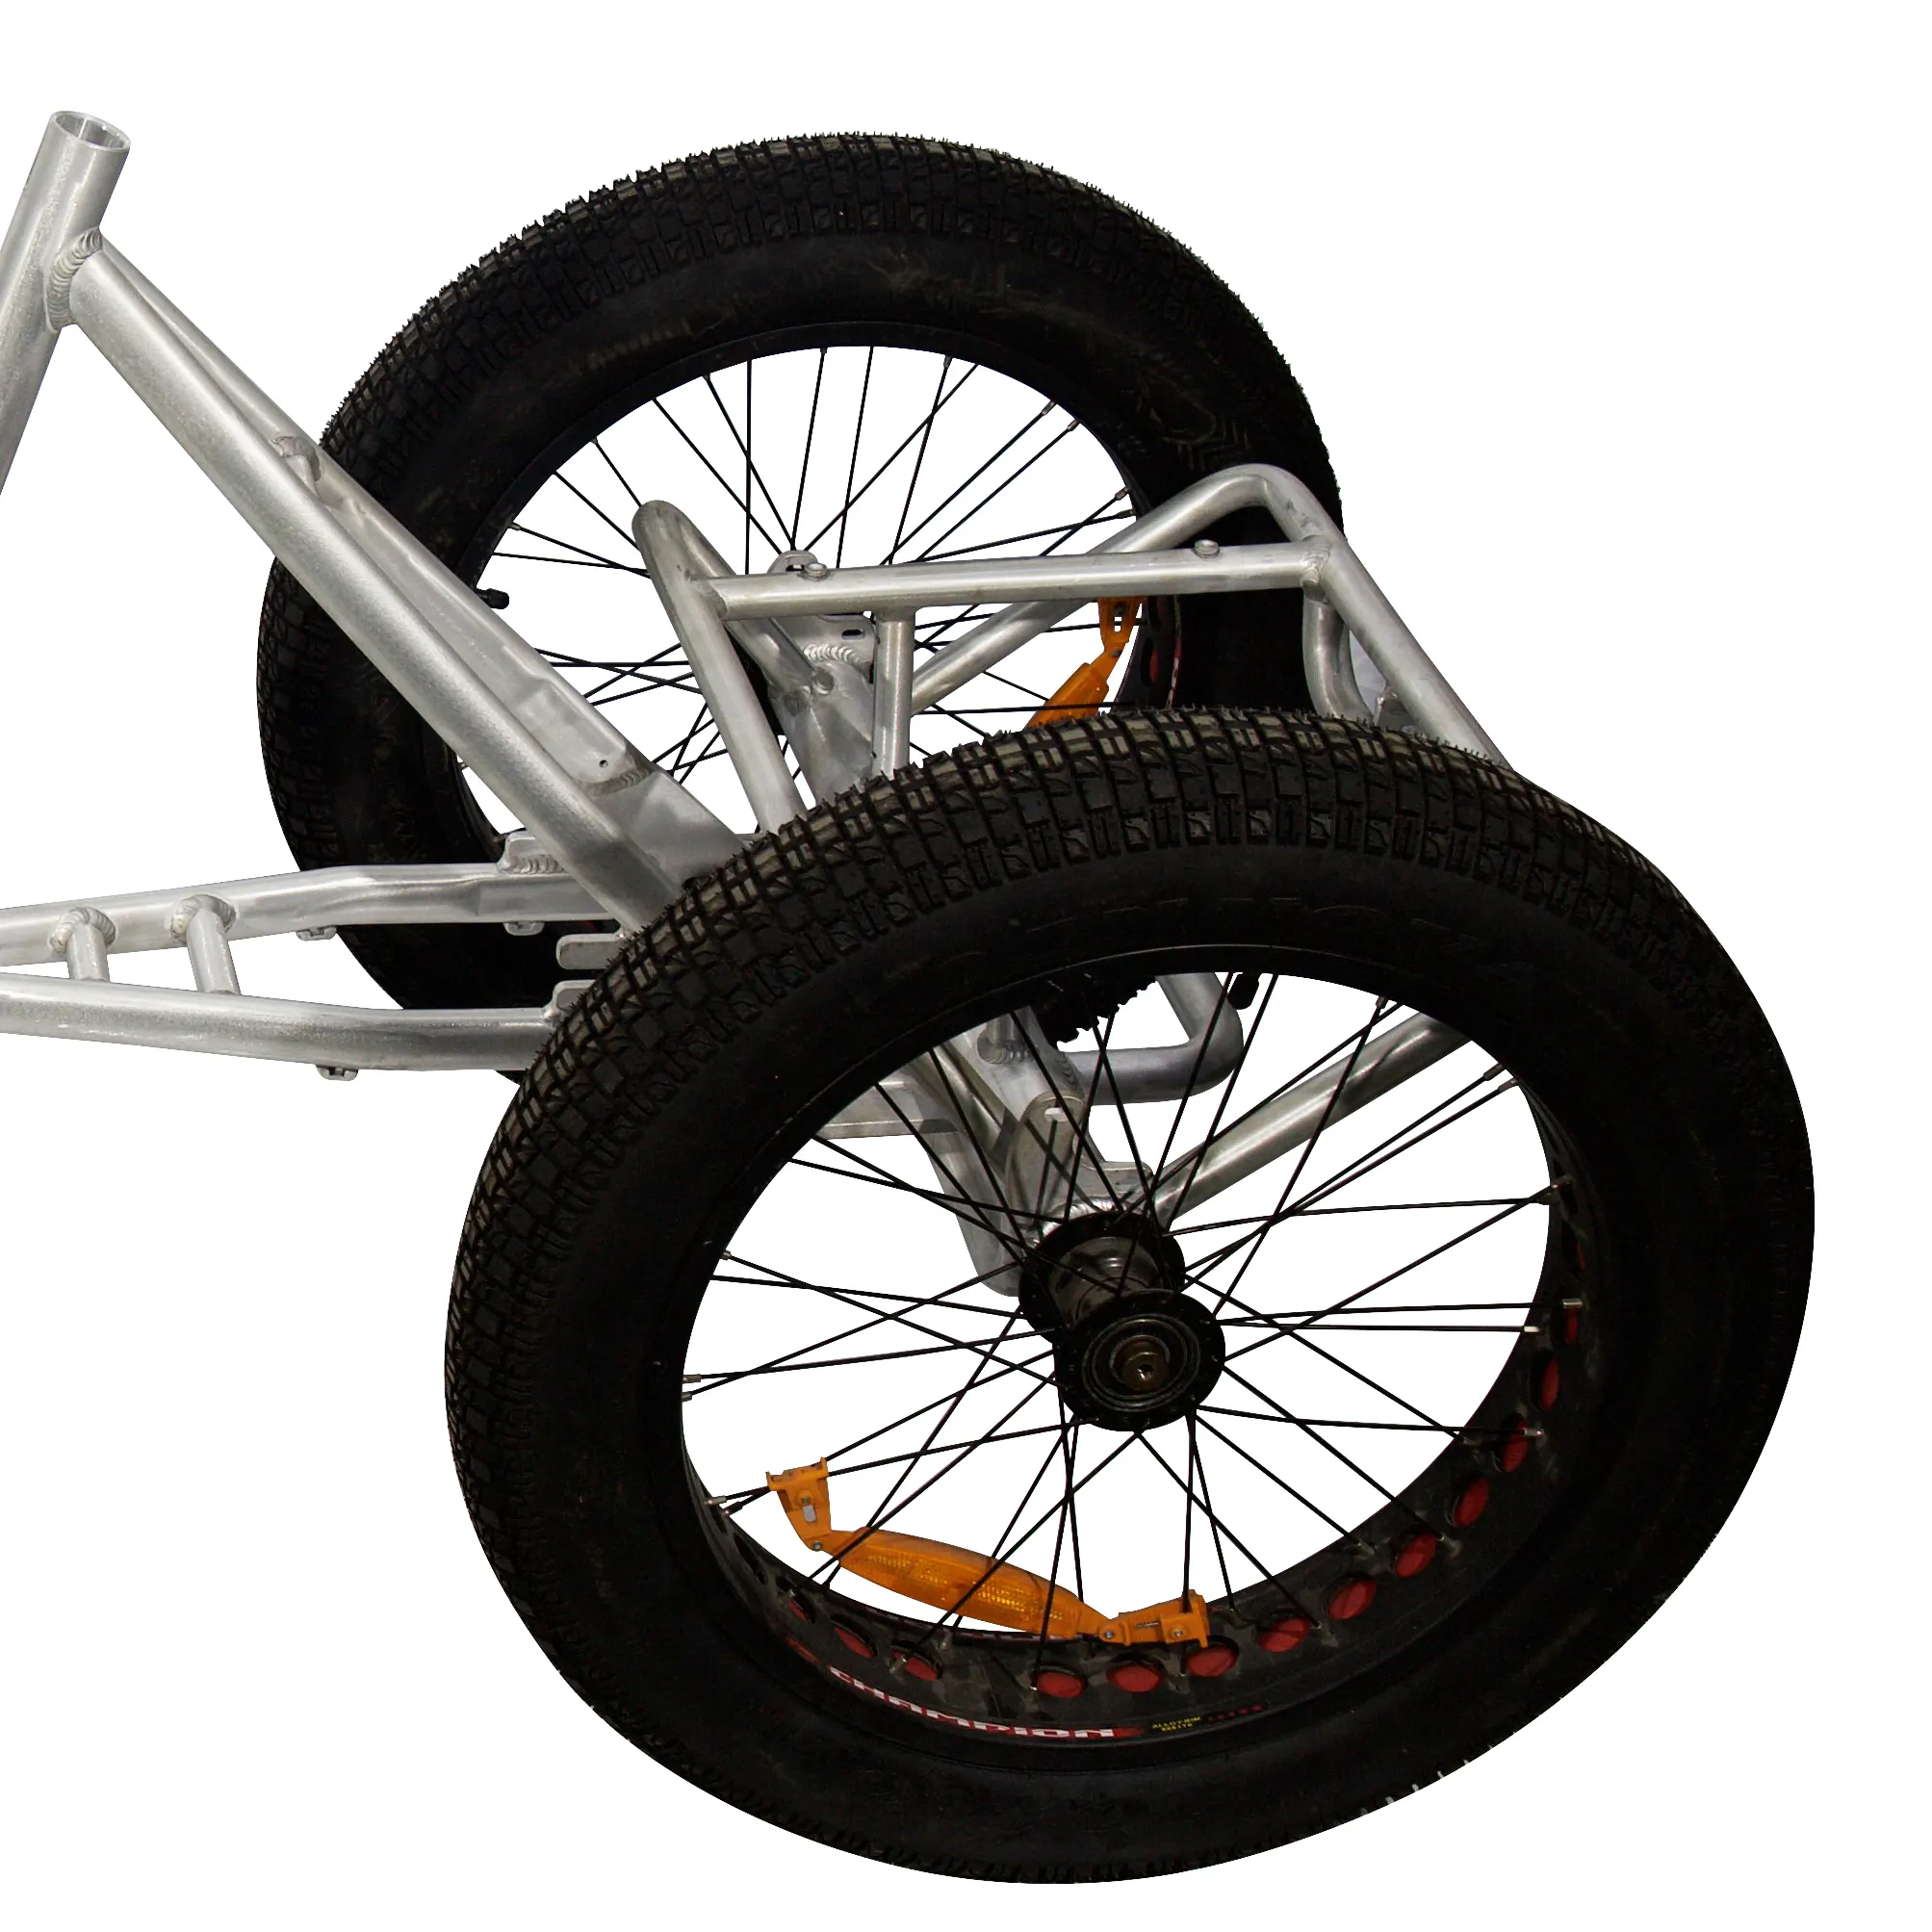 산악자전거용 알루미늄 합금으로 만들어진 Bafang 모터 및 배터리 박스가 장착된 3 륜 전기 자전거 프레임 대량 판매